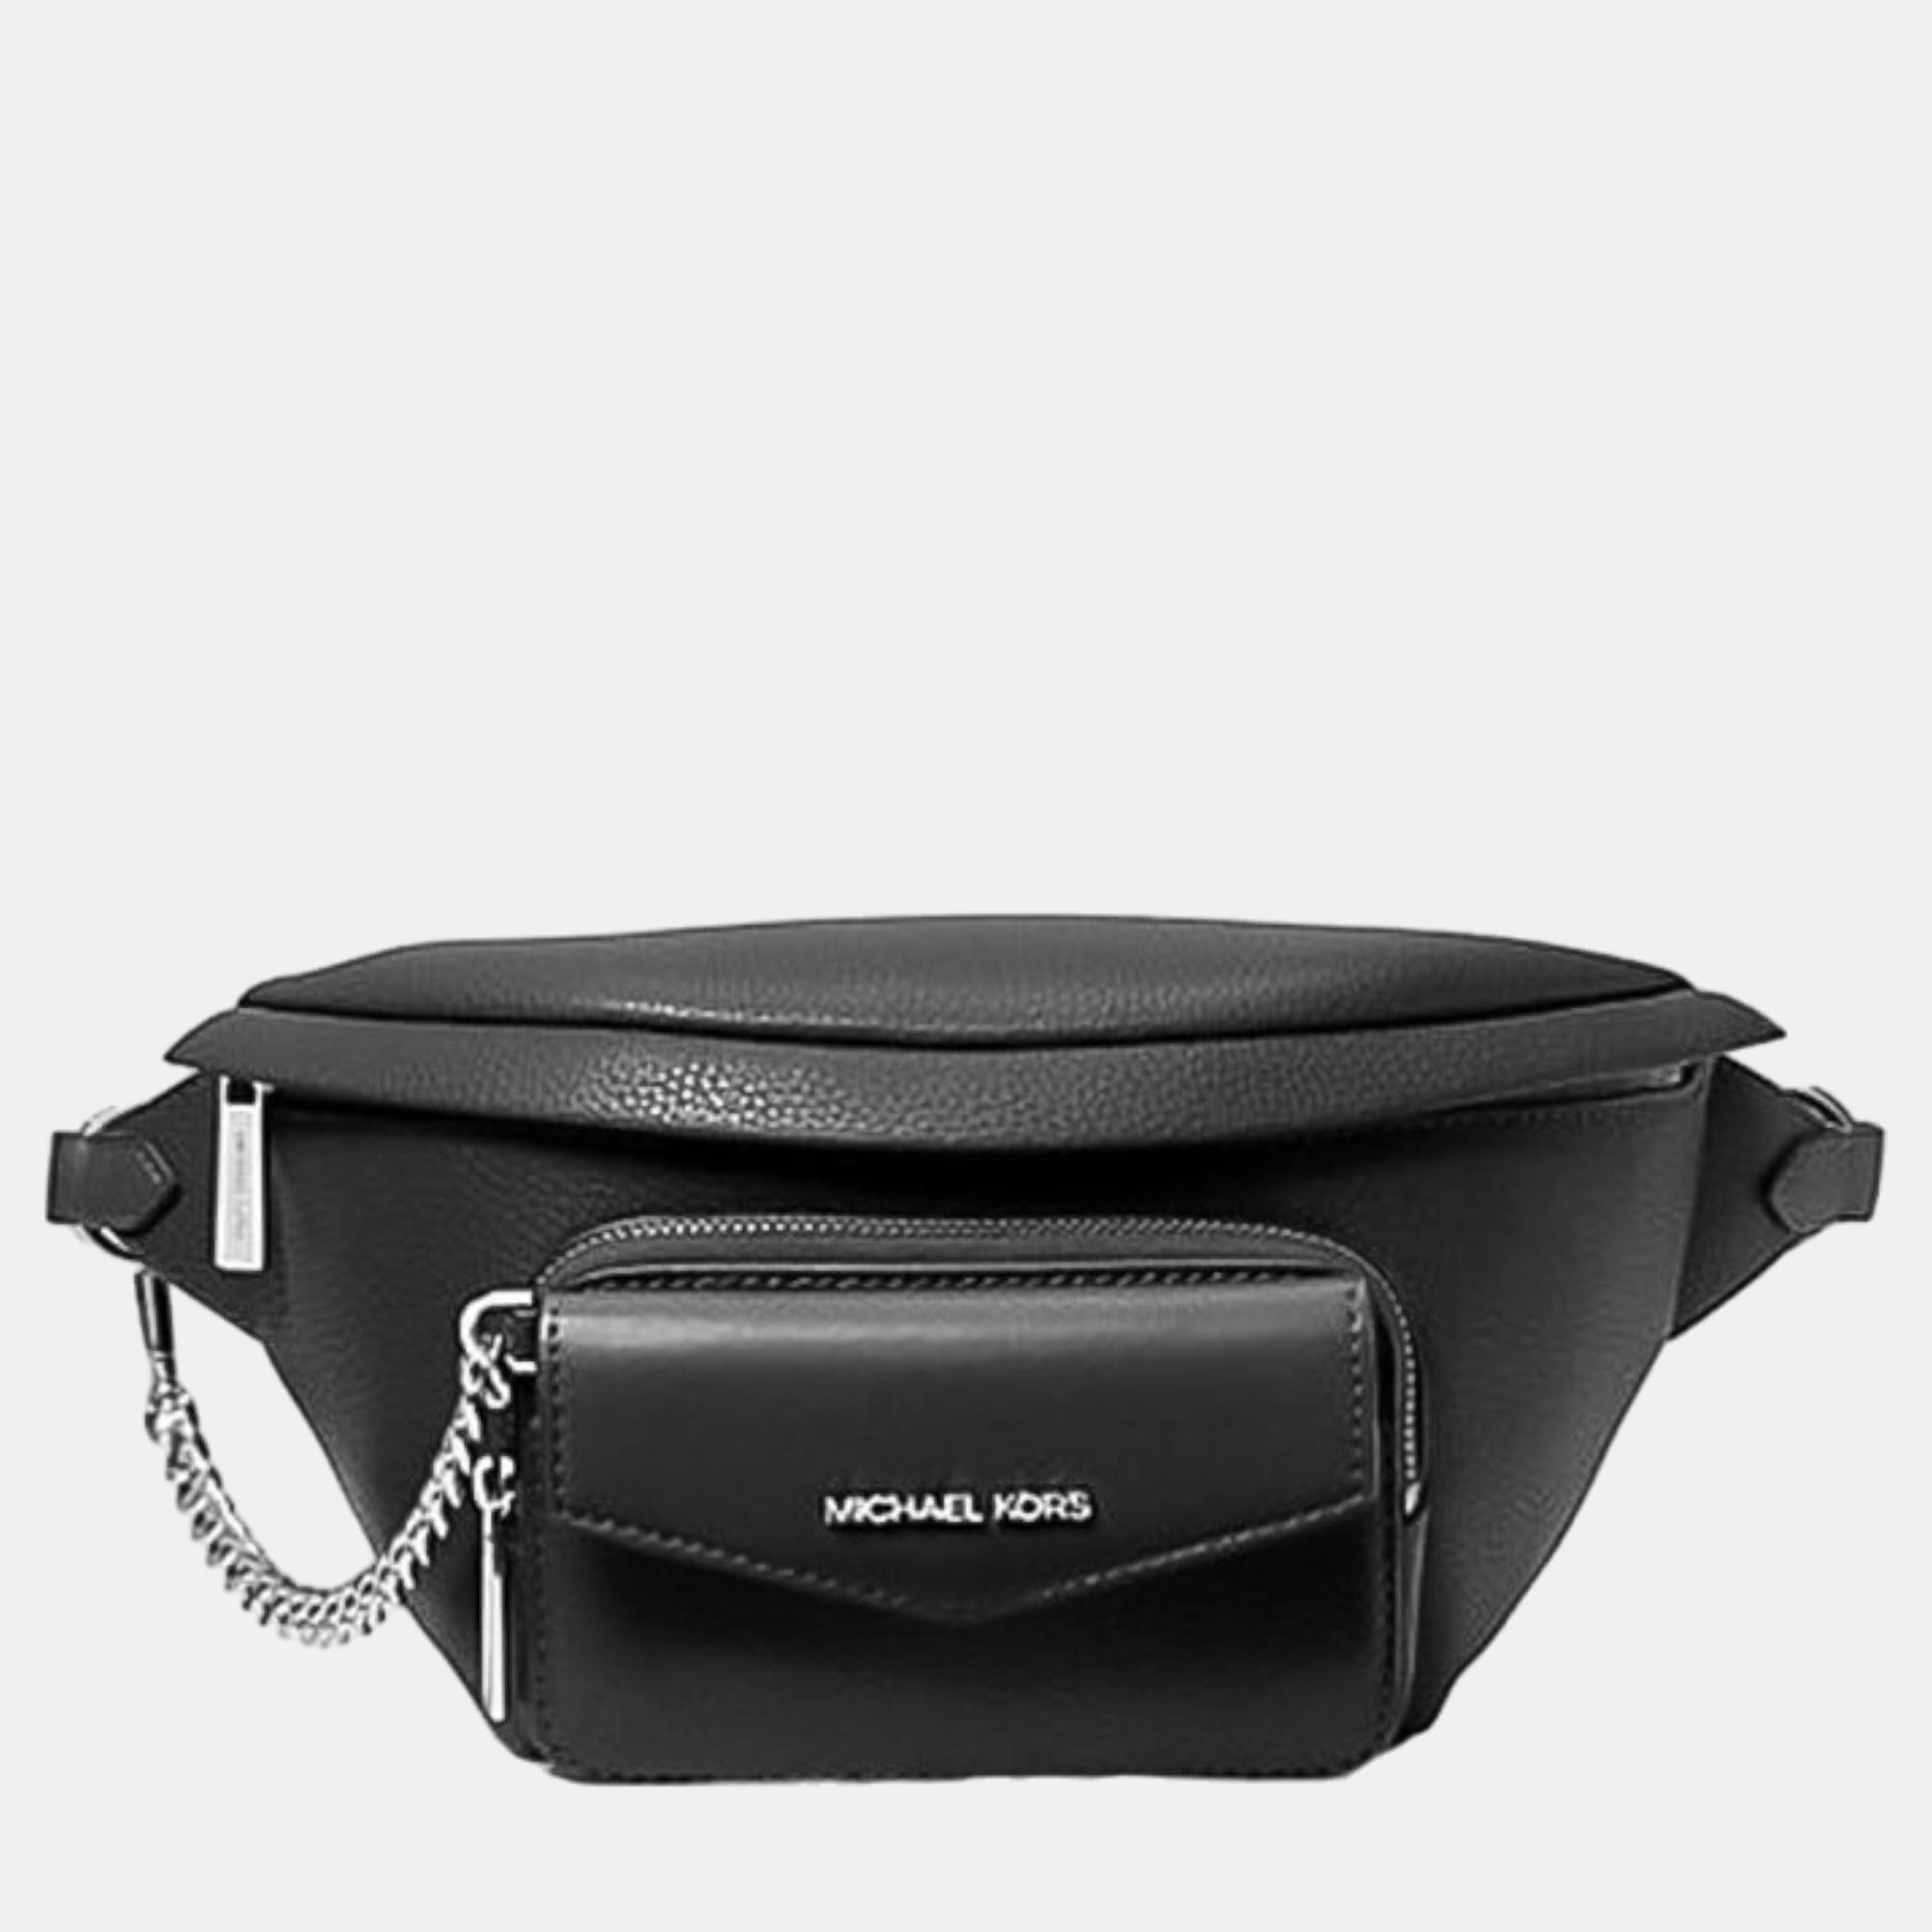 

Michael Kors Black Leather Belt Bag